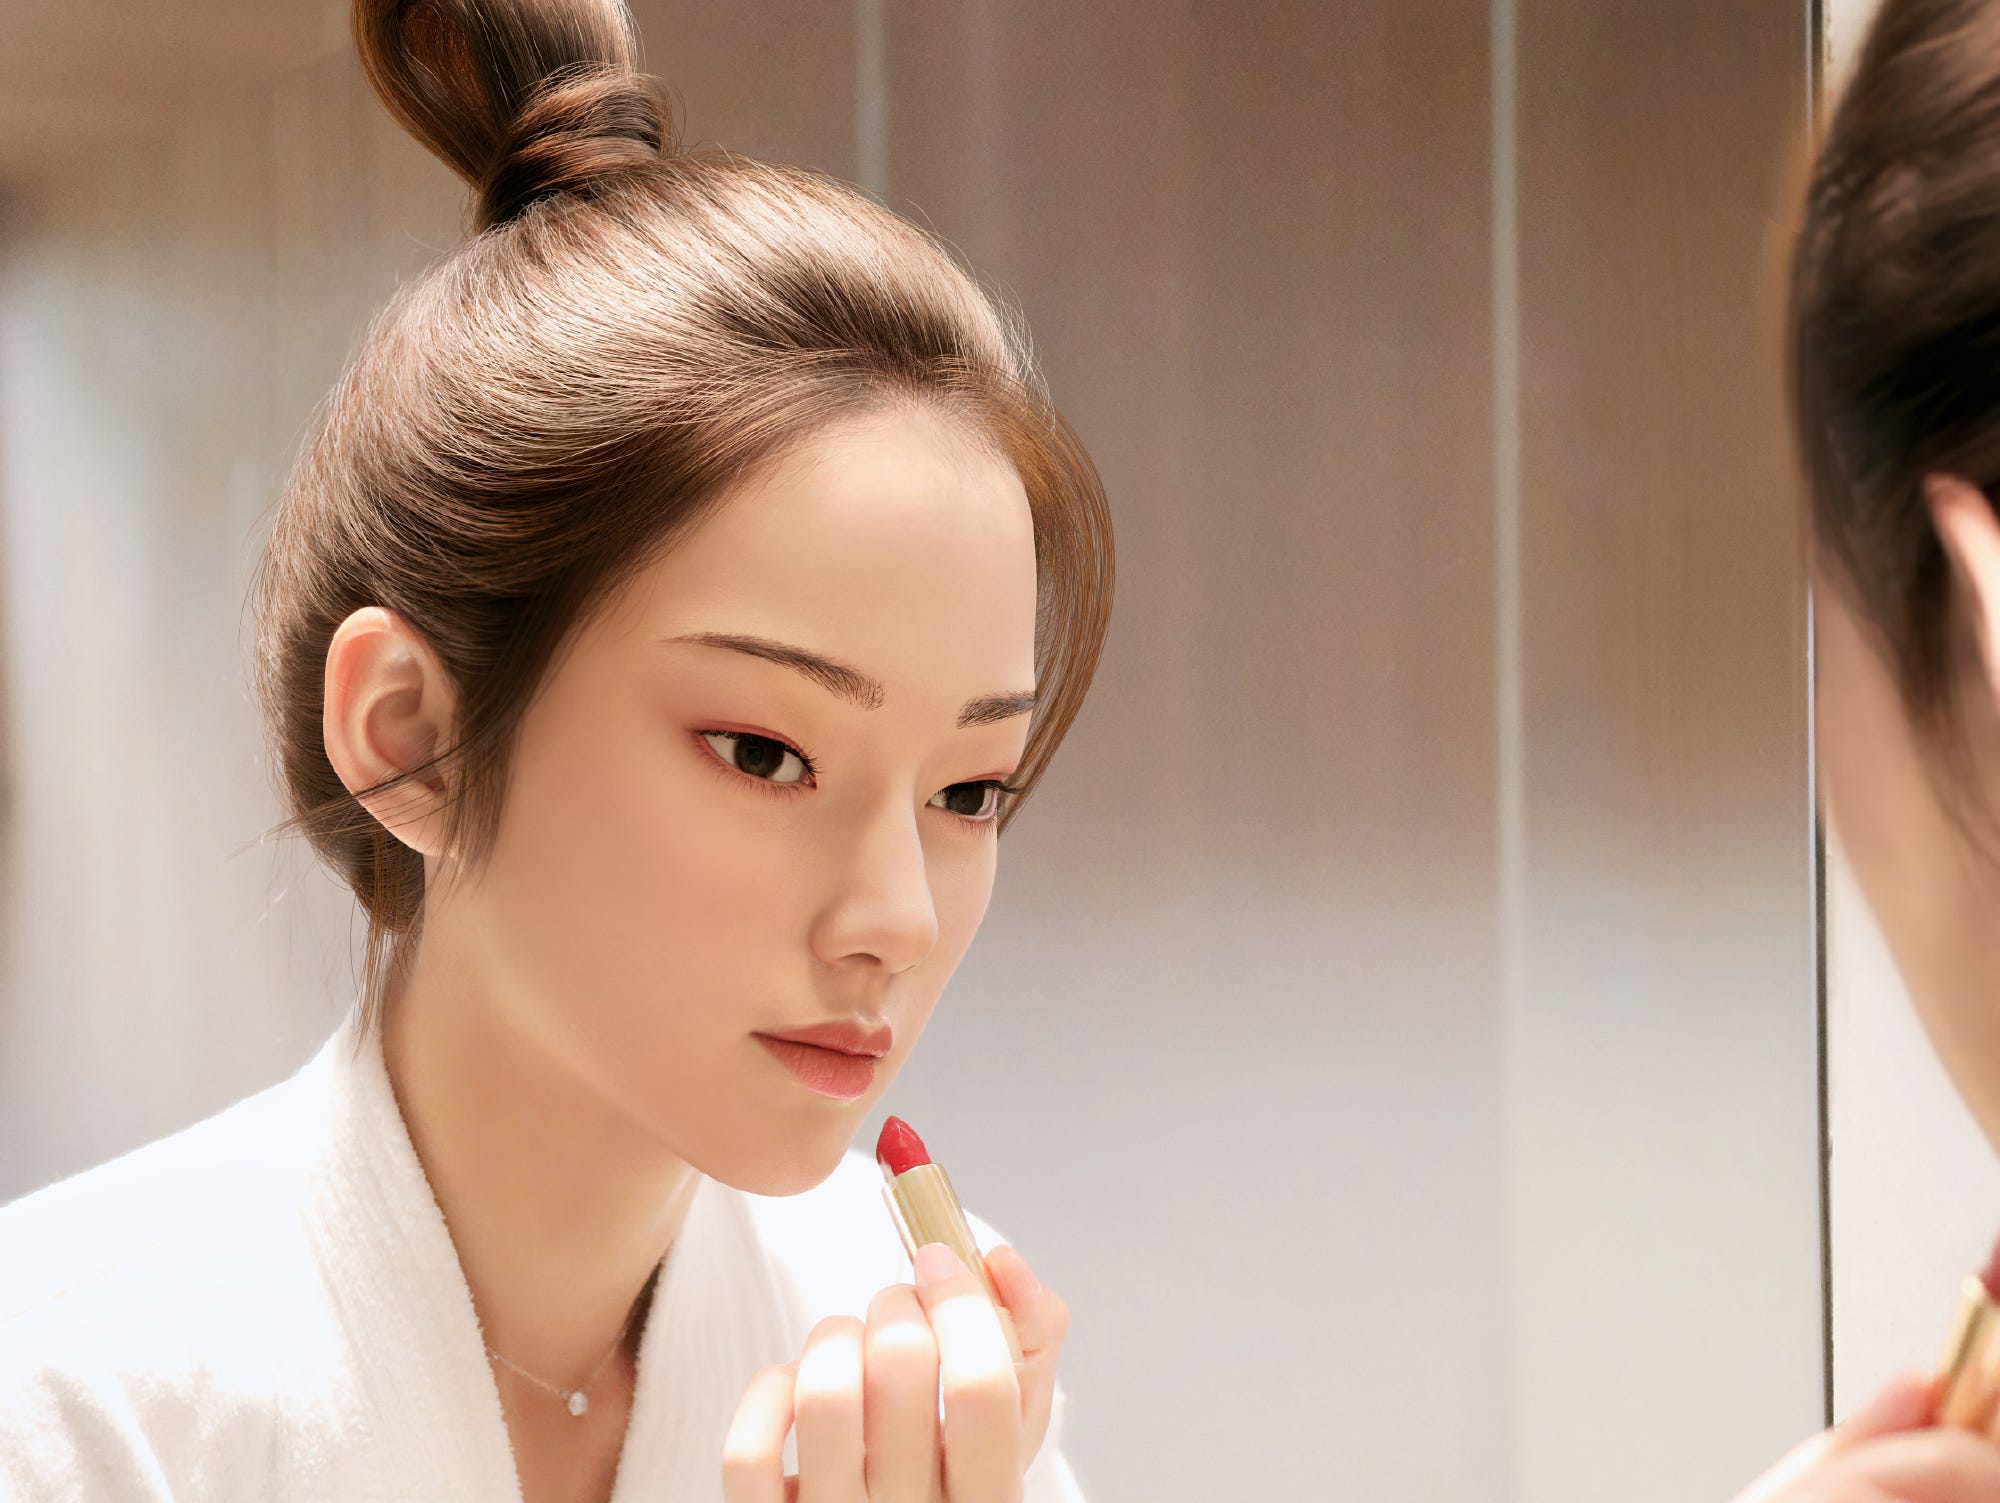 Ling adverteert met tal van producten, van make-up tot bubble thee. Ze verscheen ook in tijdschriften en is geprogrammeerd om levensechte fotoshoots te doen, waar ze in realistische omgevingen wordt geplaatst. Afbeelding: Ling/Weibo